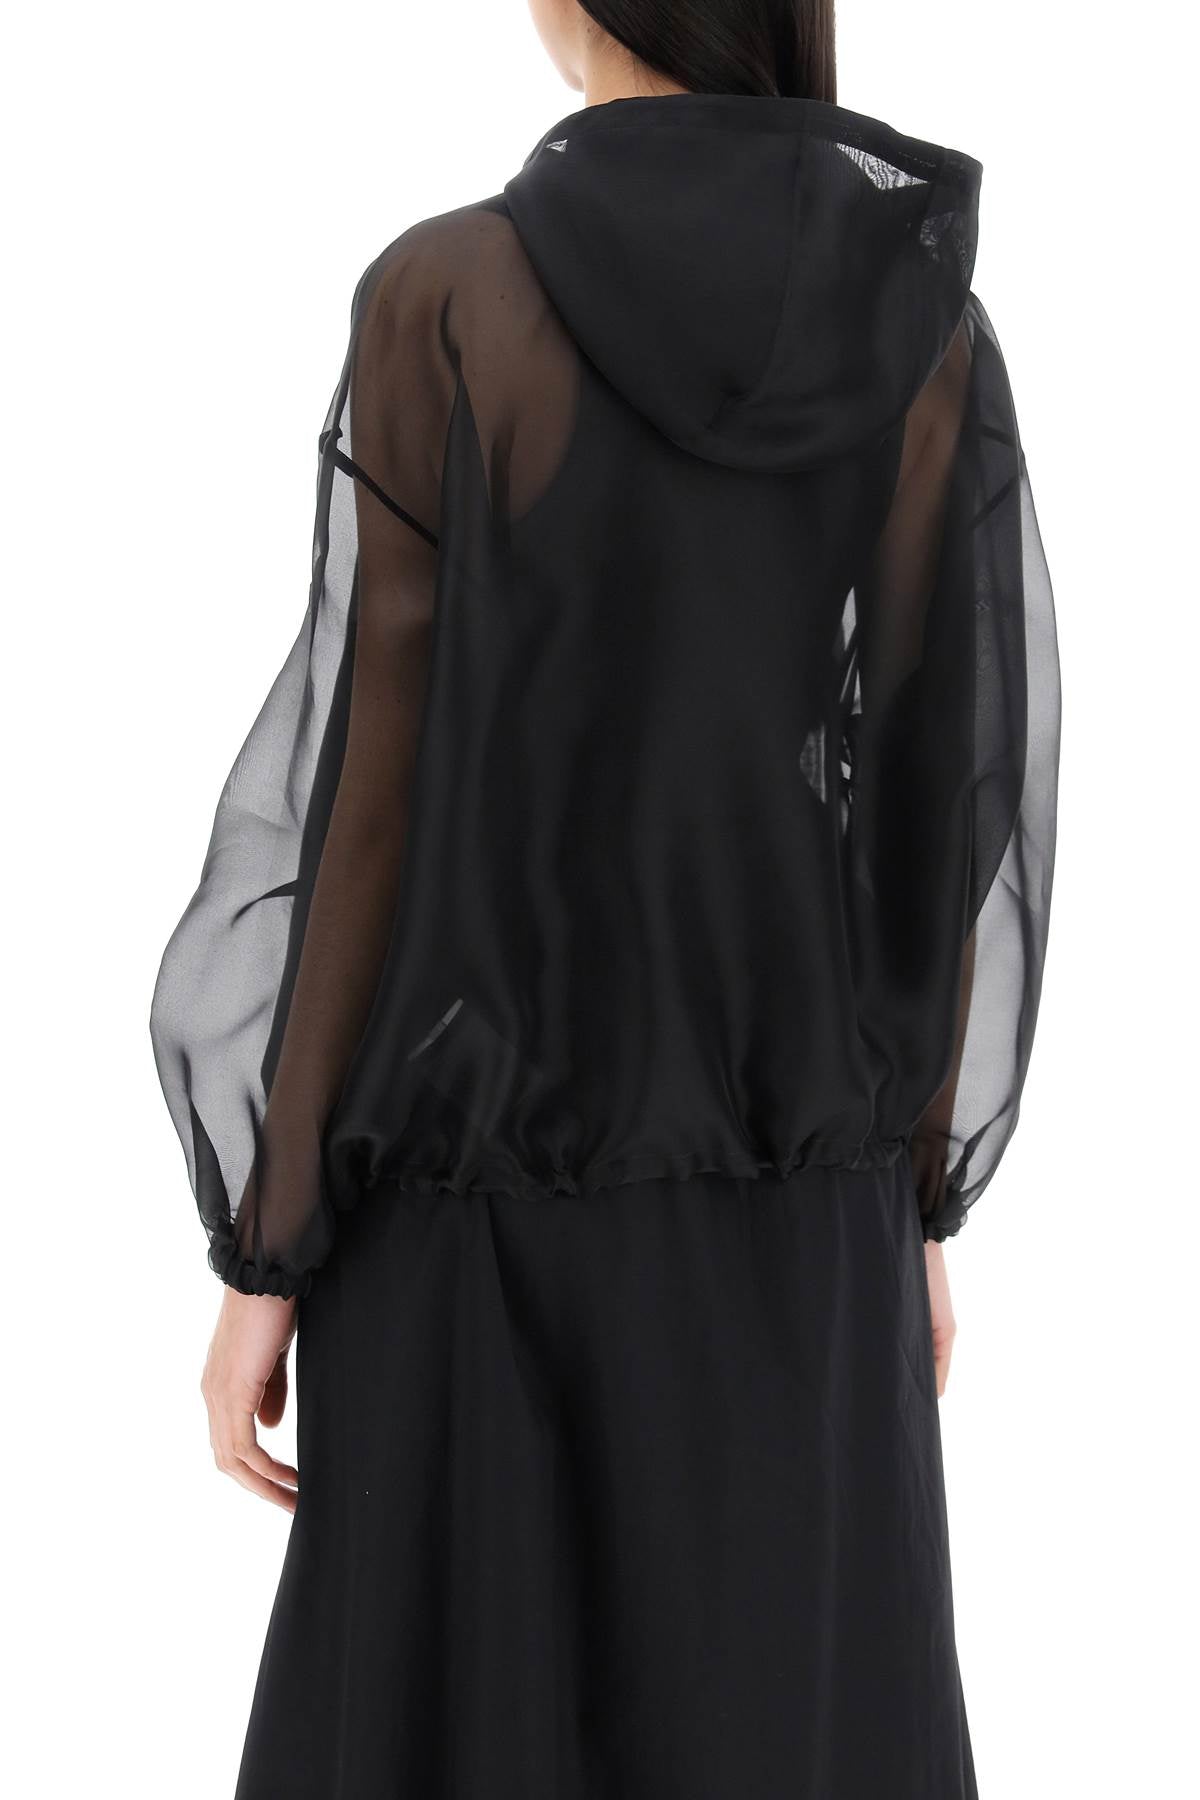 Áo khoác dệt kim mỏng màu đen bằng lụa cho nữ